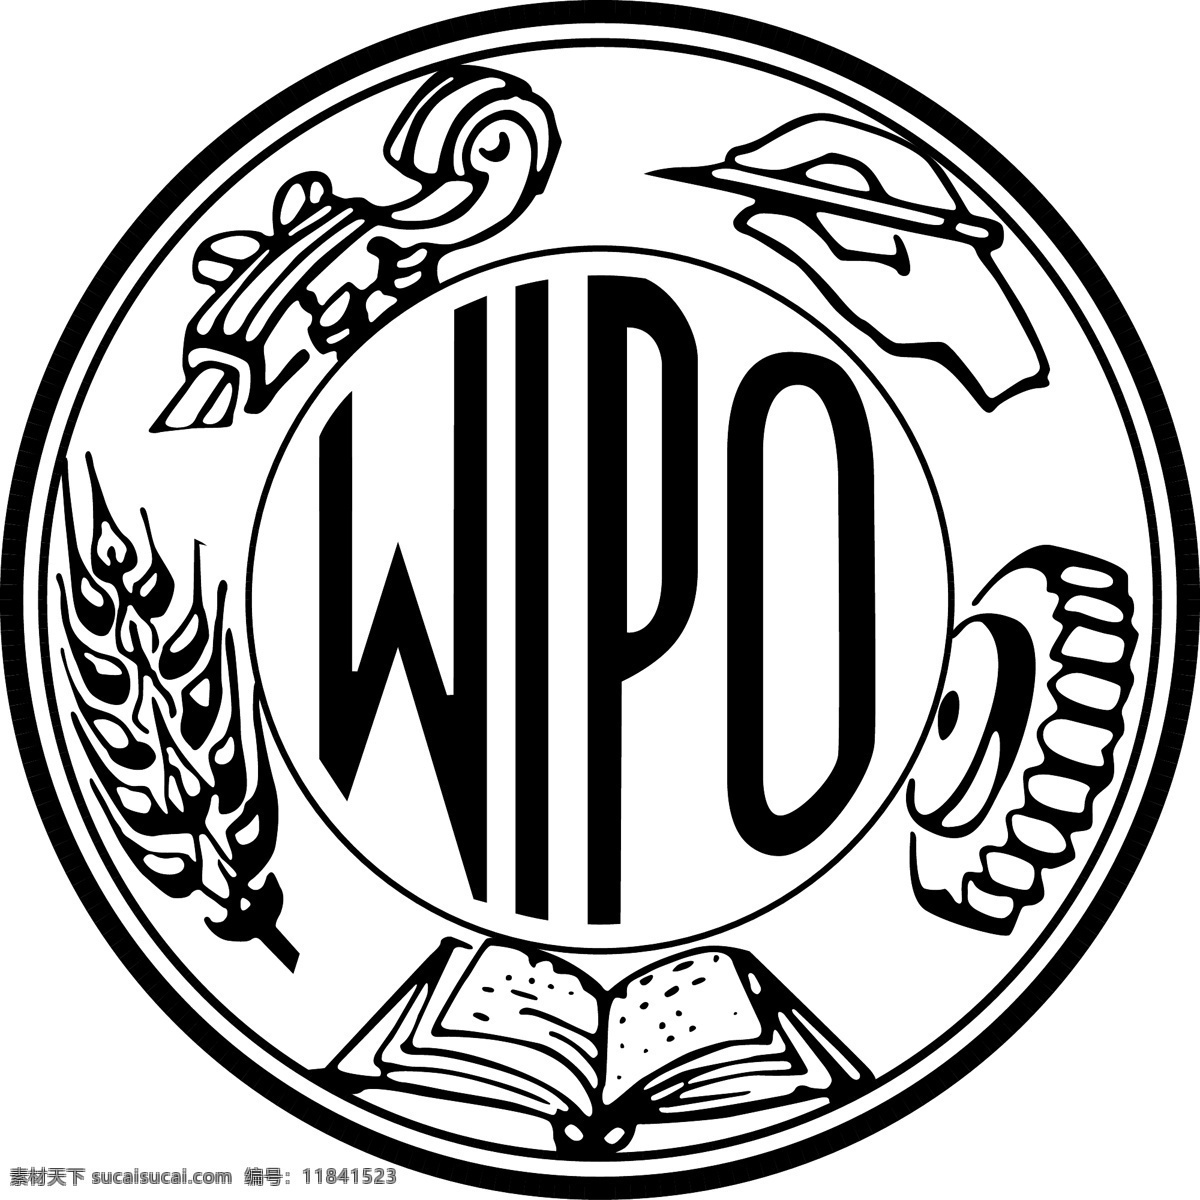 世界知识产权组织 wipo图片 世界知识产权 组织 wipo 知识 产权 标志图标 公共标识标志